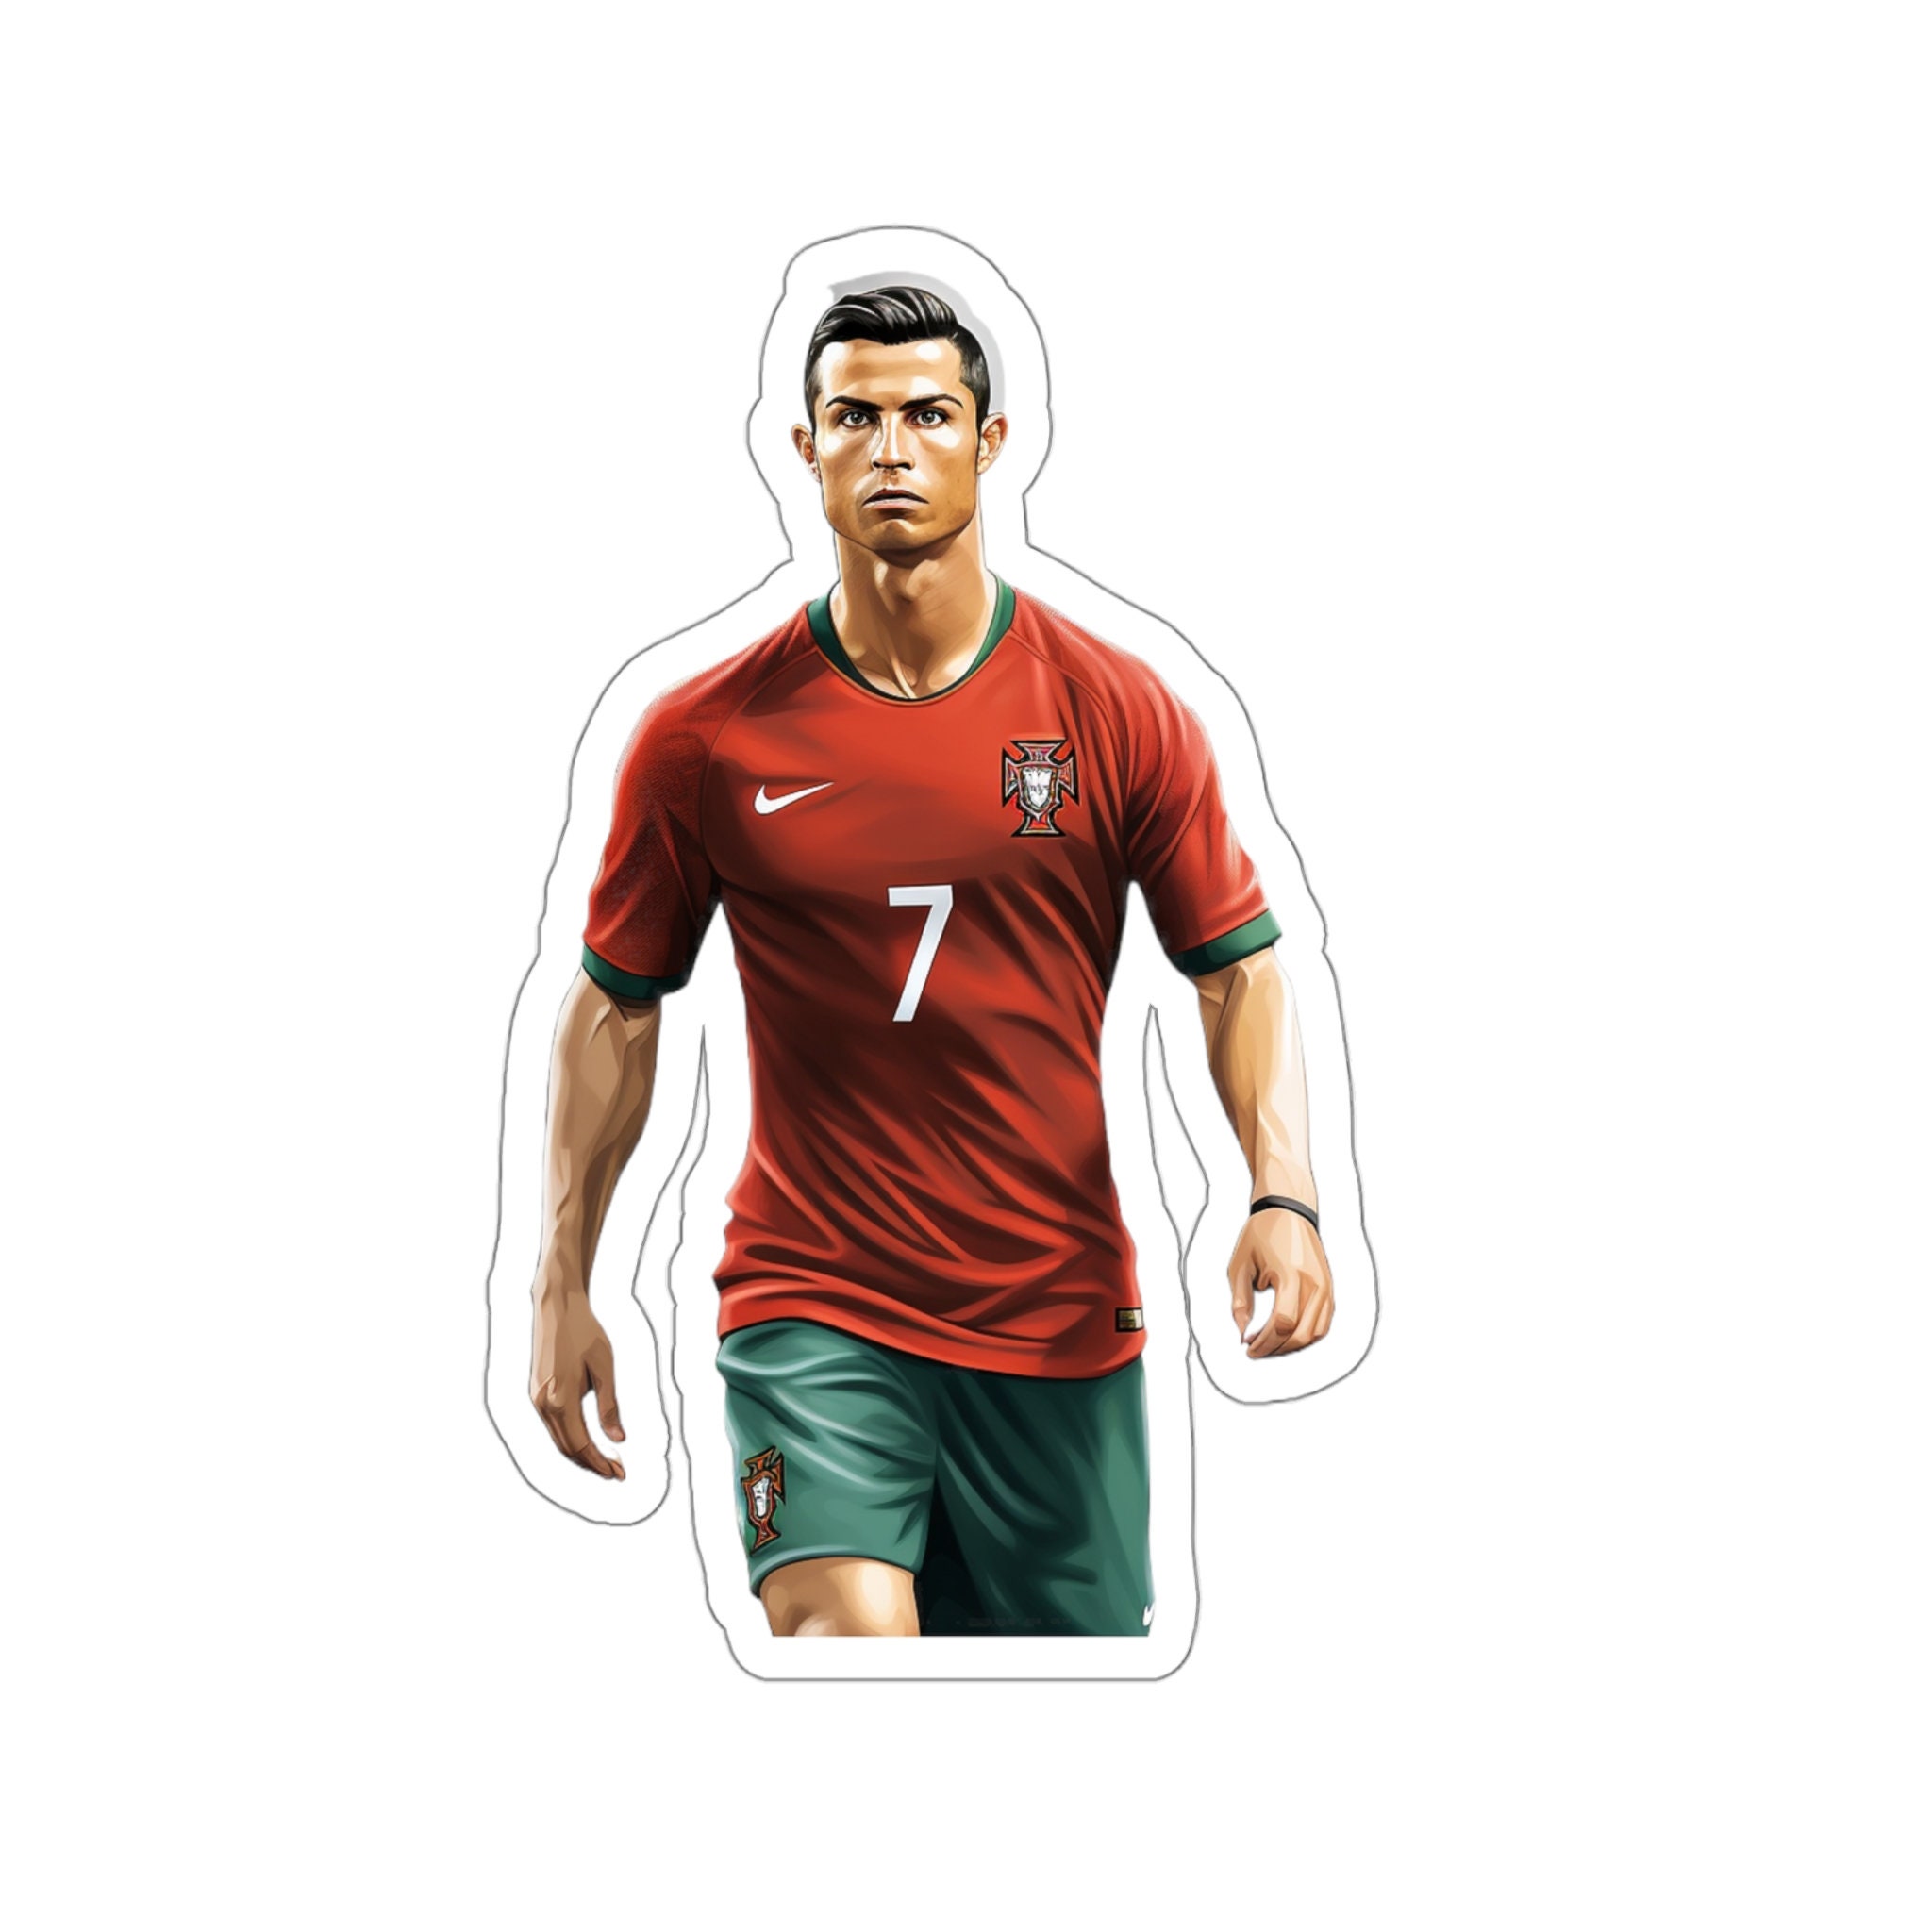 Autocollant Cristiano Ronaldo Portugal Qatar 2022 WC Funko Pop super rare